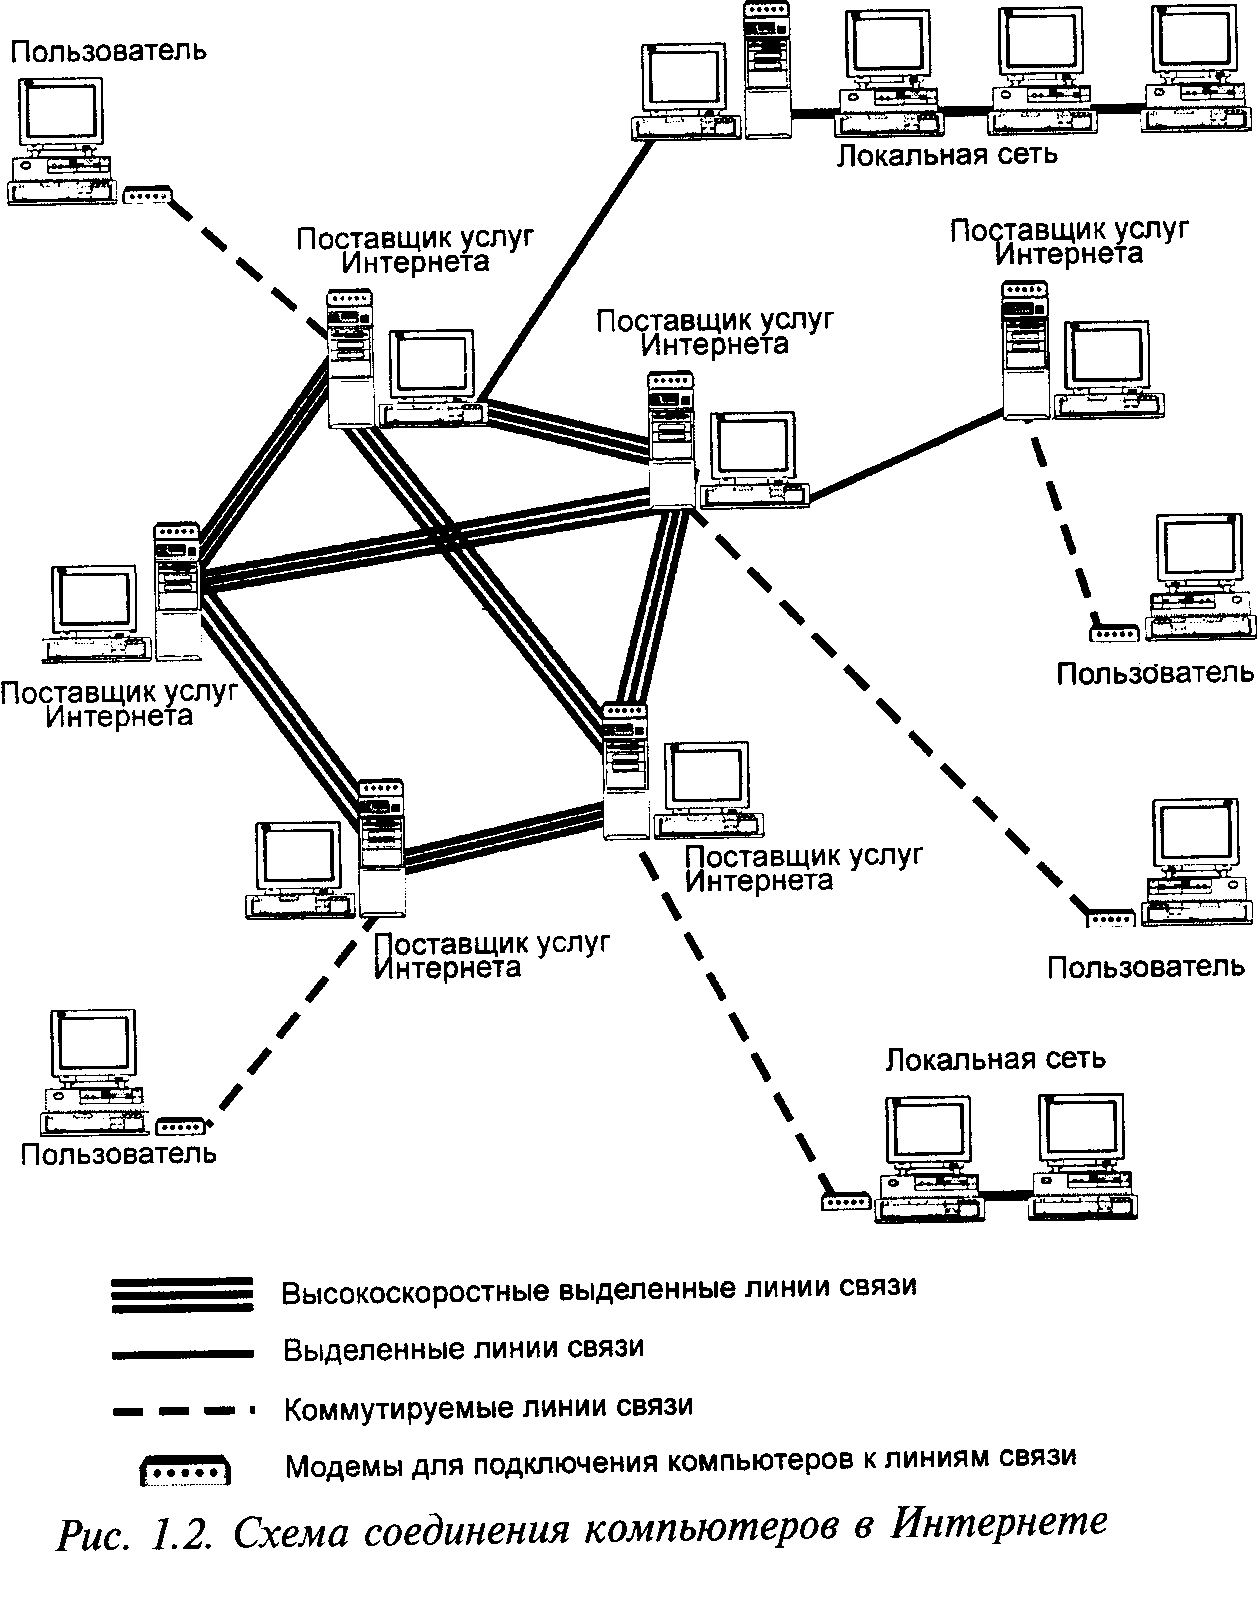 Примеры национальных сетей. Схема локальной сети организации интернет провайдера. Структурная схема подключения к локальной сети. Схема соединения 3 локальной сети. Принципиальные схемы сетей связи.